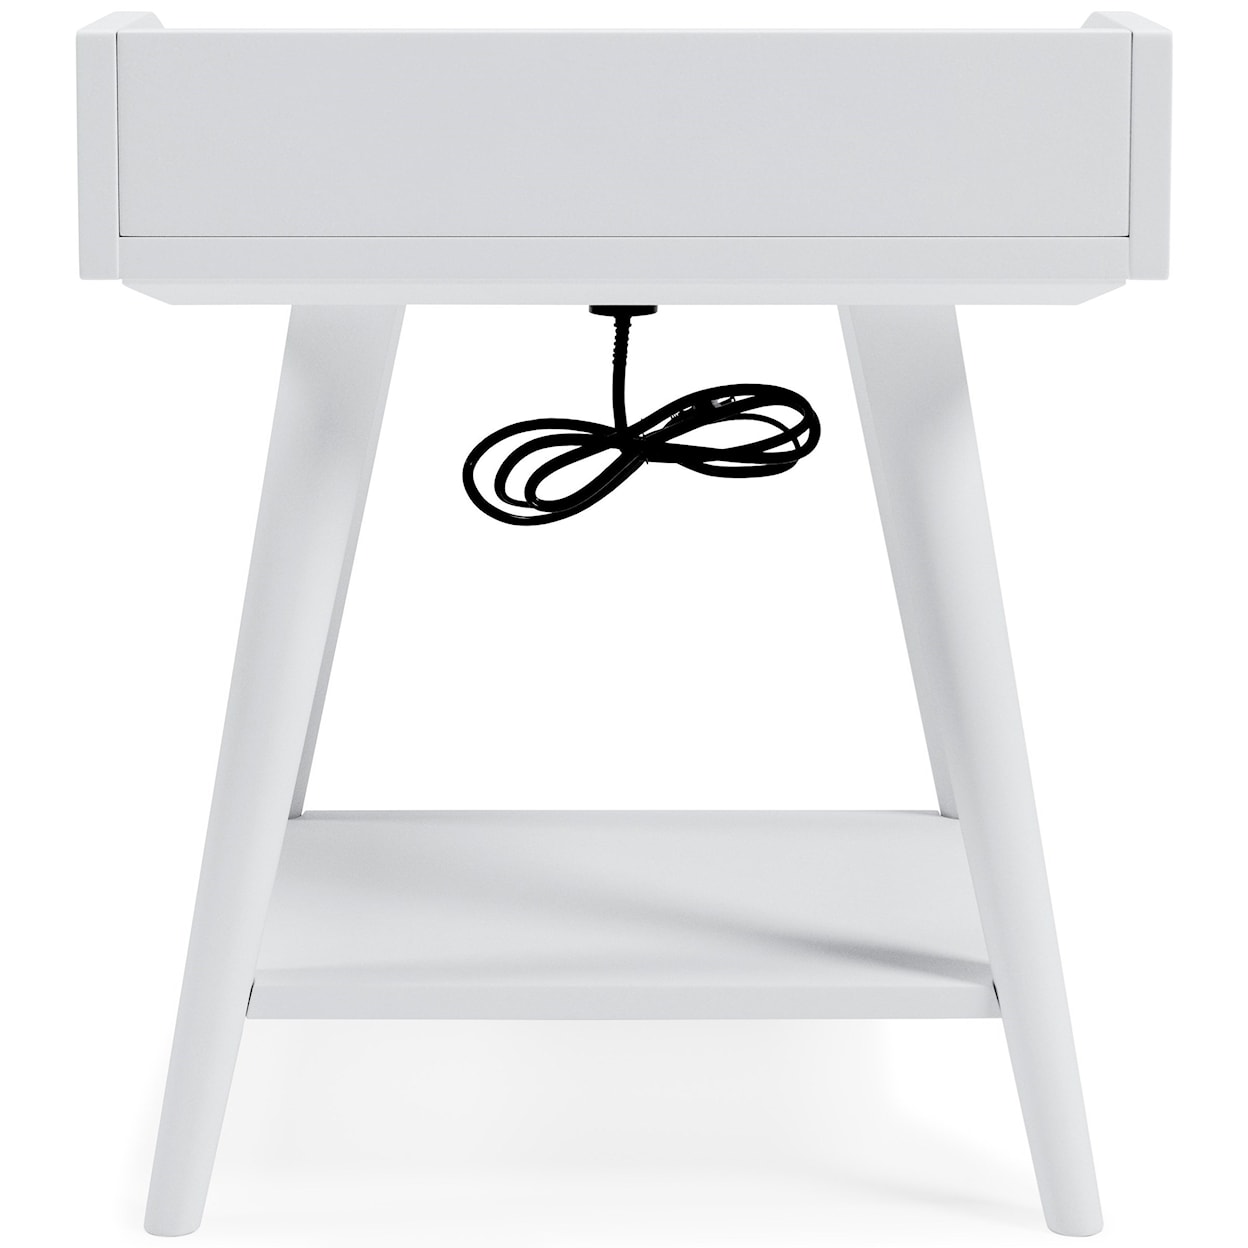 Ashley Furniture Signature Design Blariden Accent Table